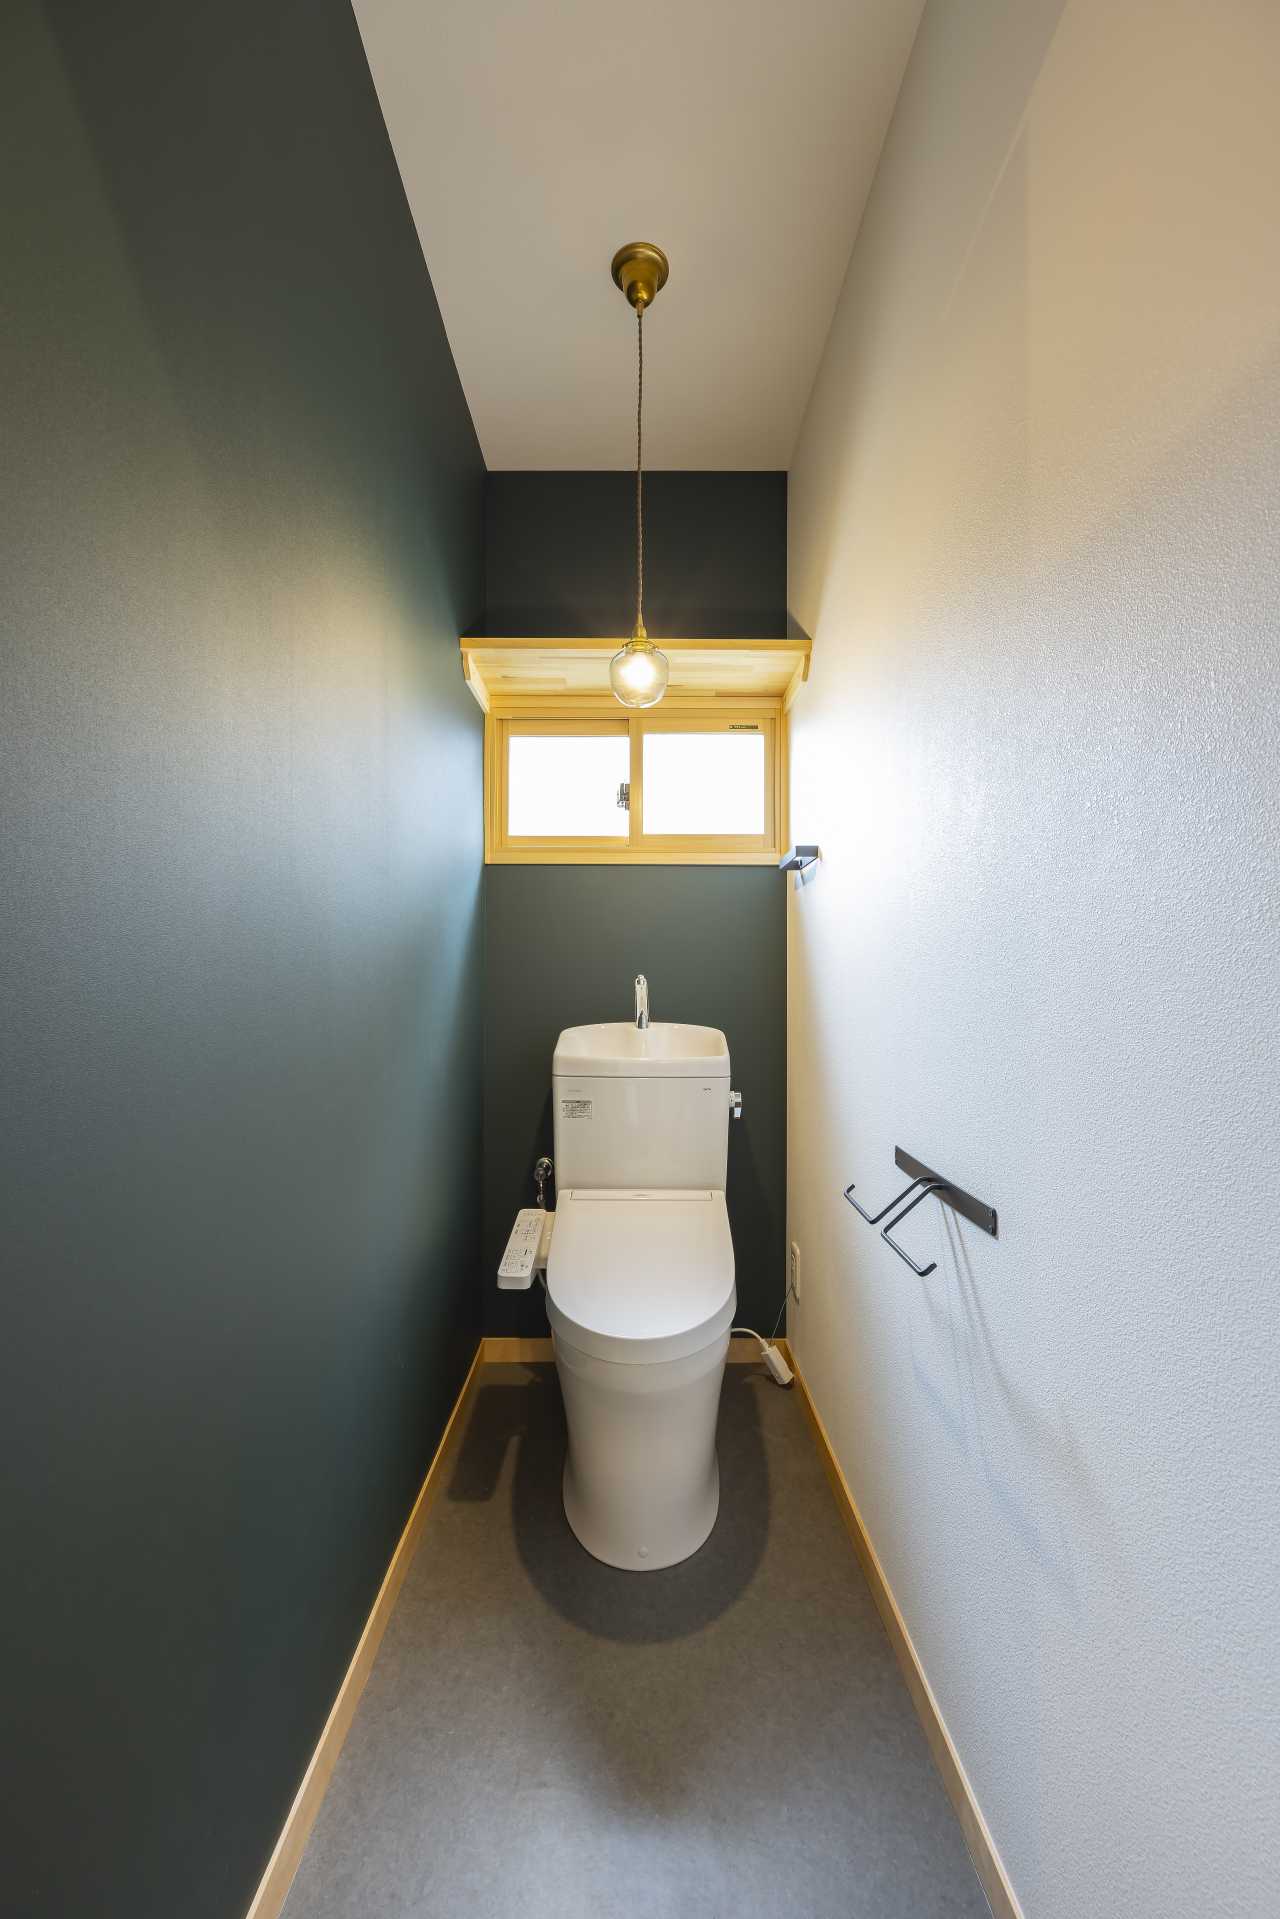 クロスでトイレの雰囲気もがらっと変わりますね。